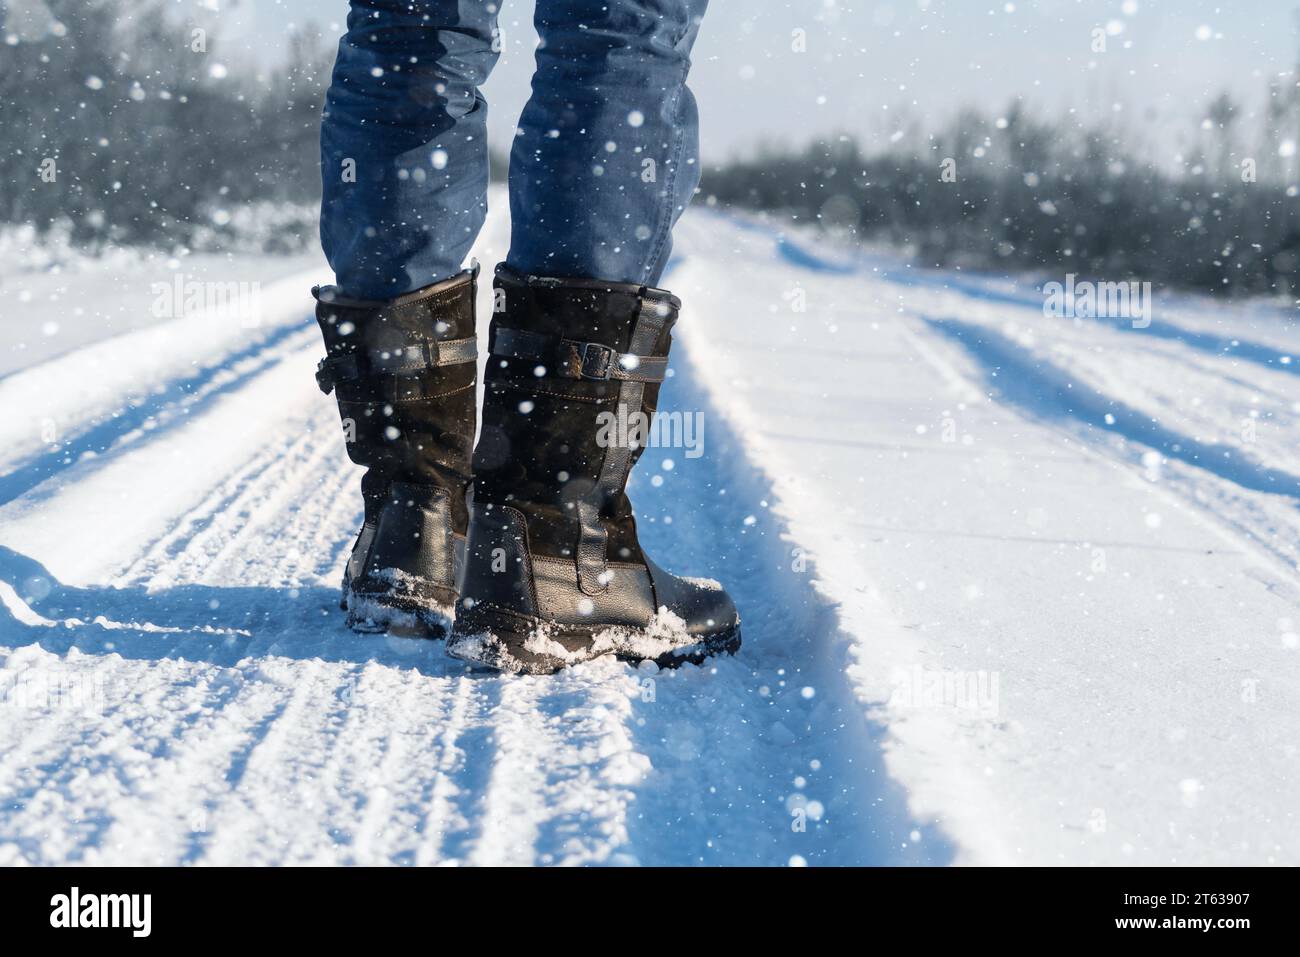 Un voyageur en bottes marche le long d'une route hivernale enneigée. Banque D'Images